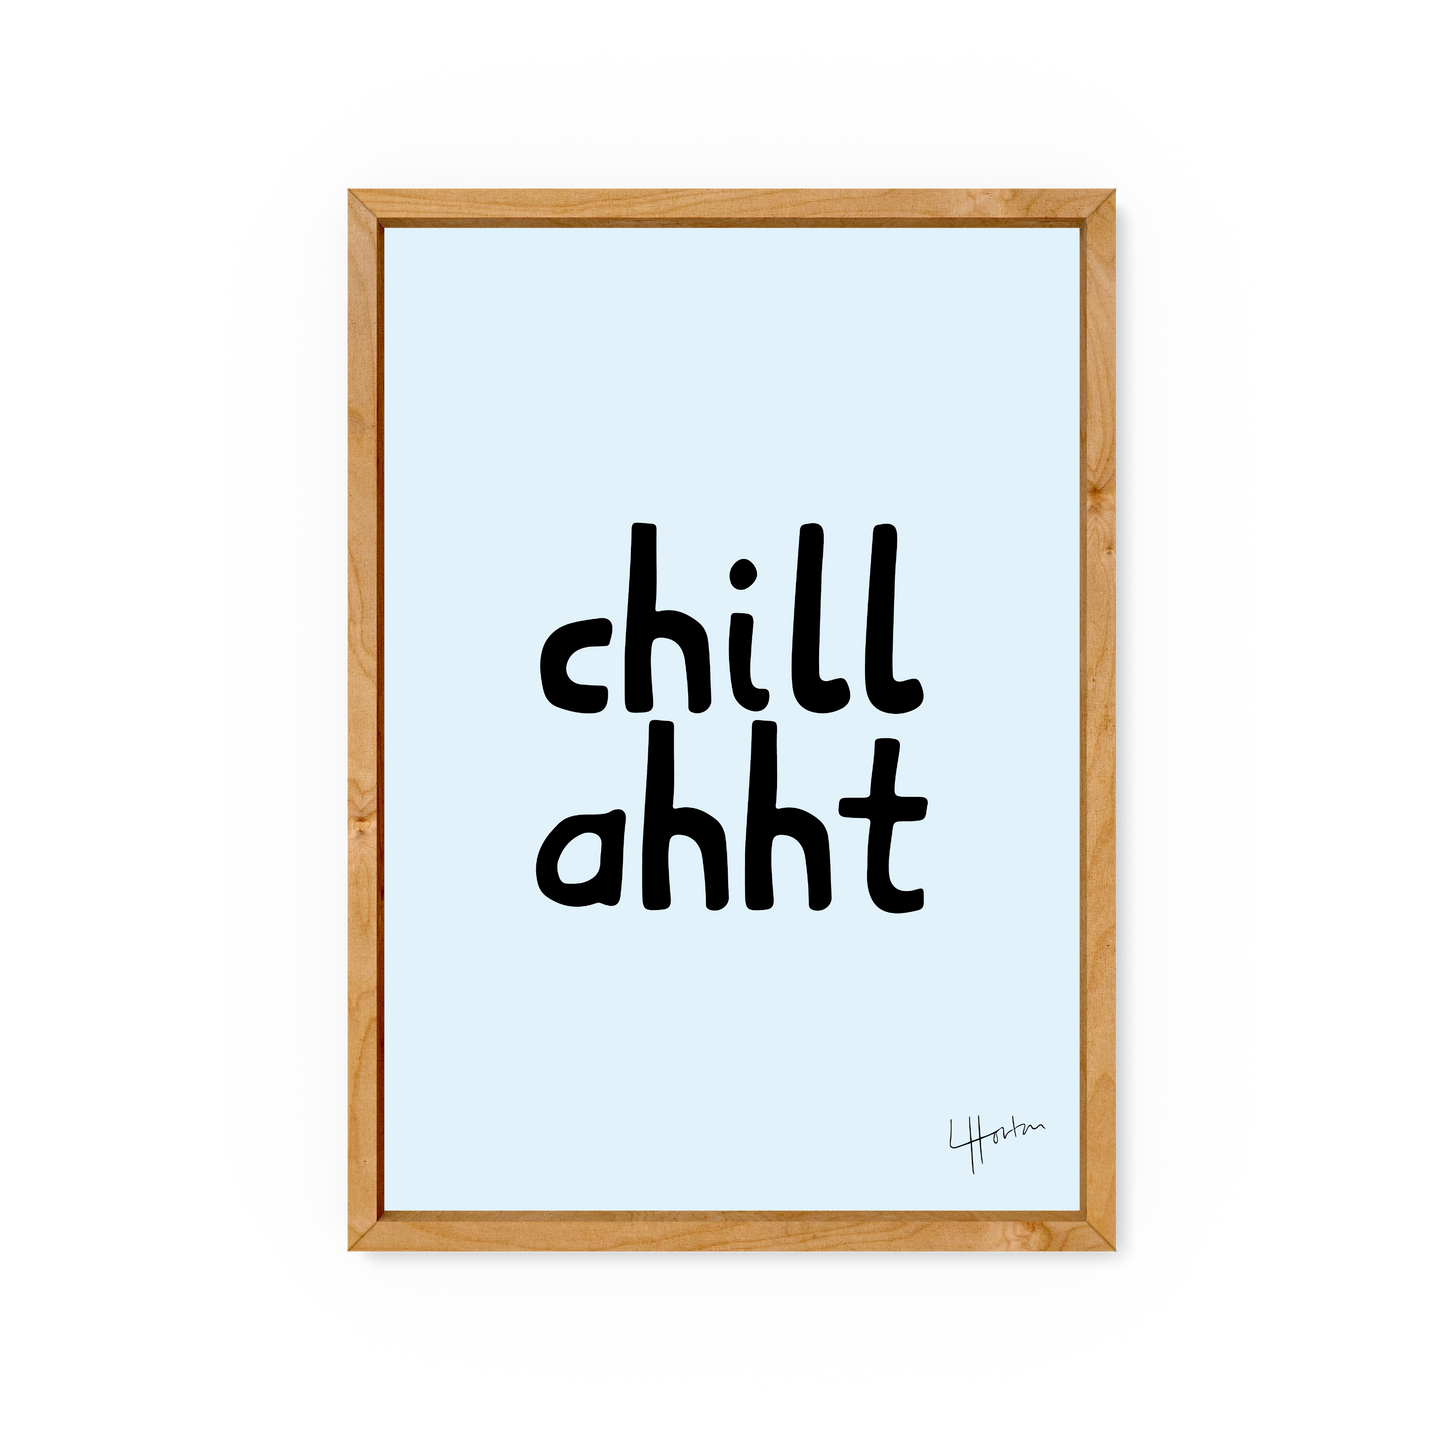 Chill Ahht- Yorkshire Slang Print - Luke Horton